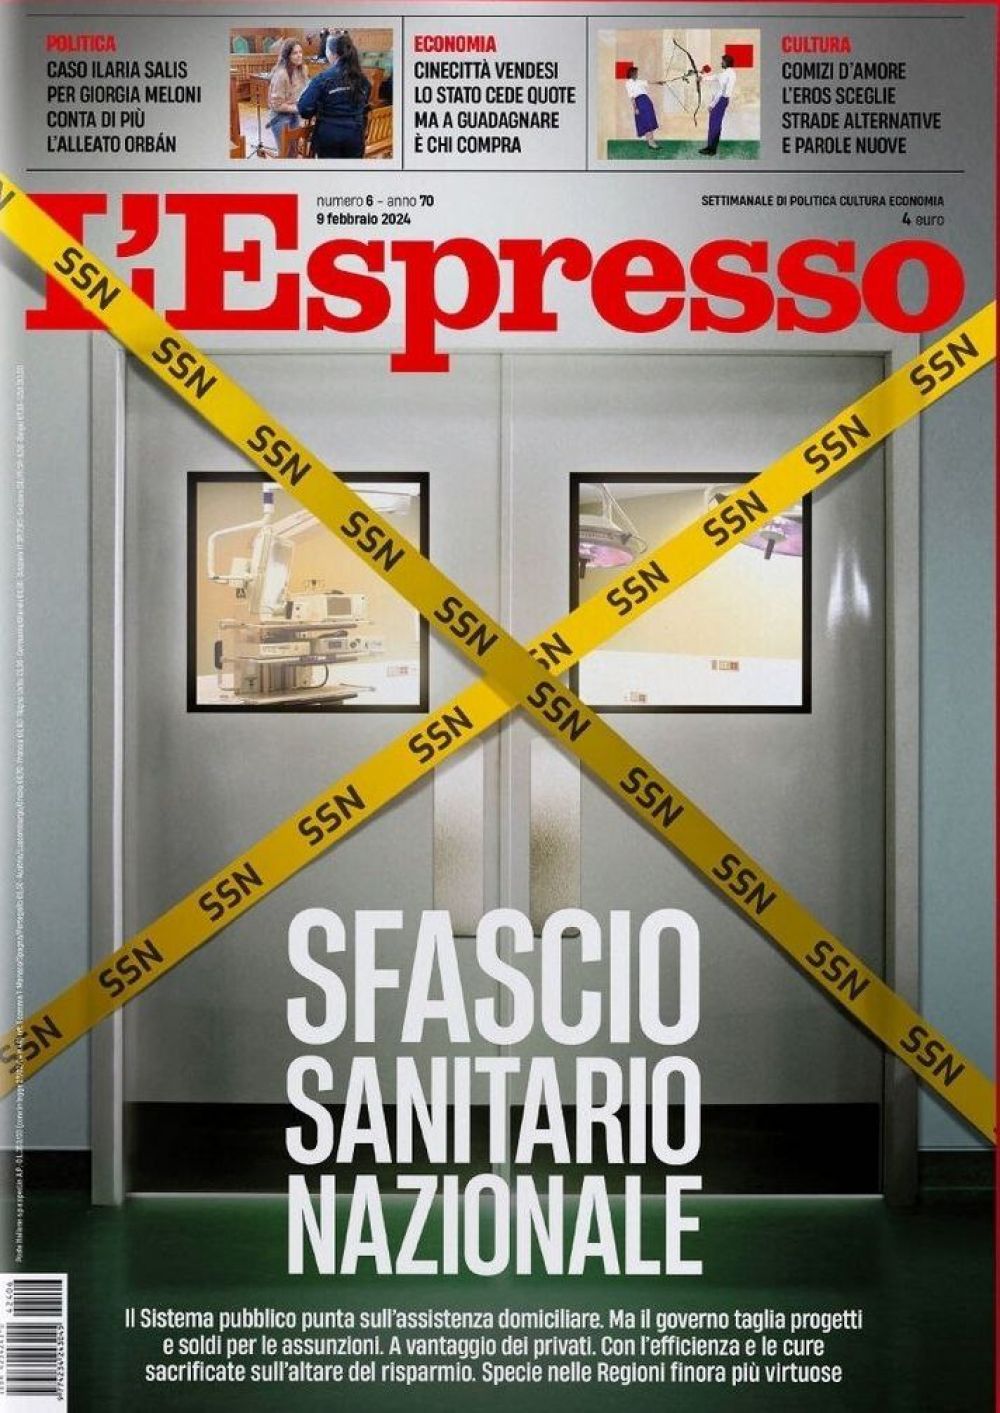 Нехватка врачей и медицинского персонала – проблема, которая для многих стран не перестает быть актуальной ещё со времён «ковида». Об этом – в итальянском L’Espresso («Экспресс»).